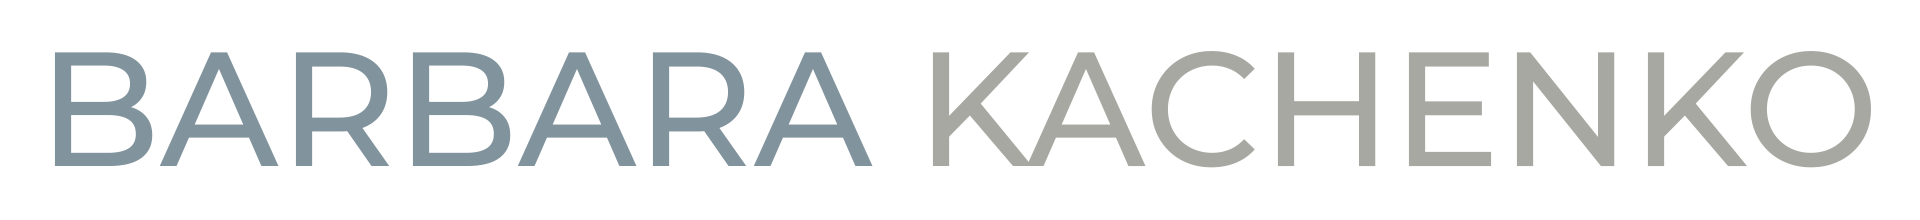 Barbara Kachenko logo